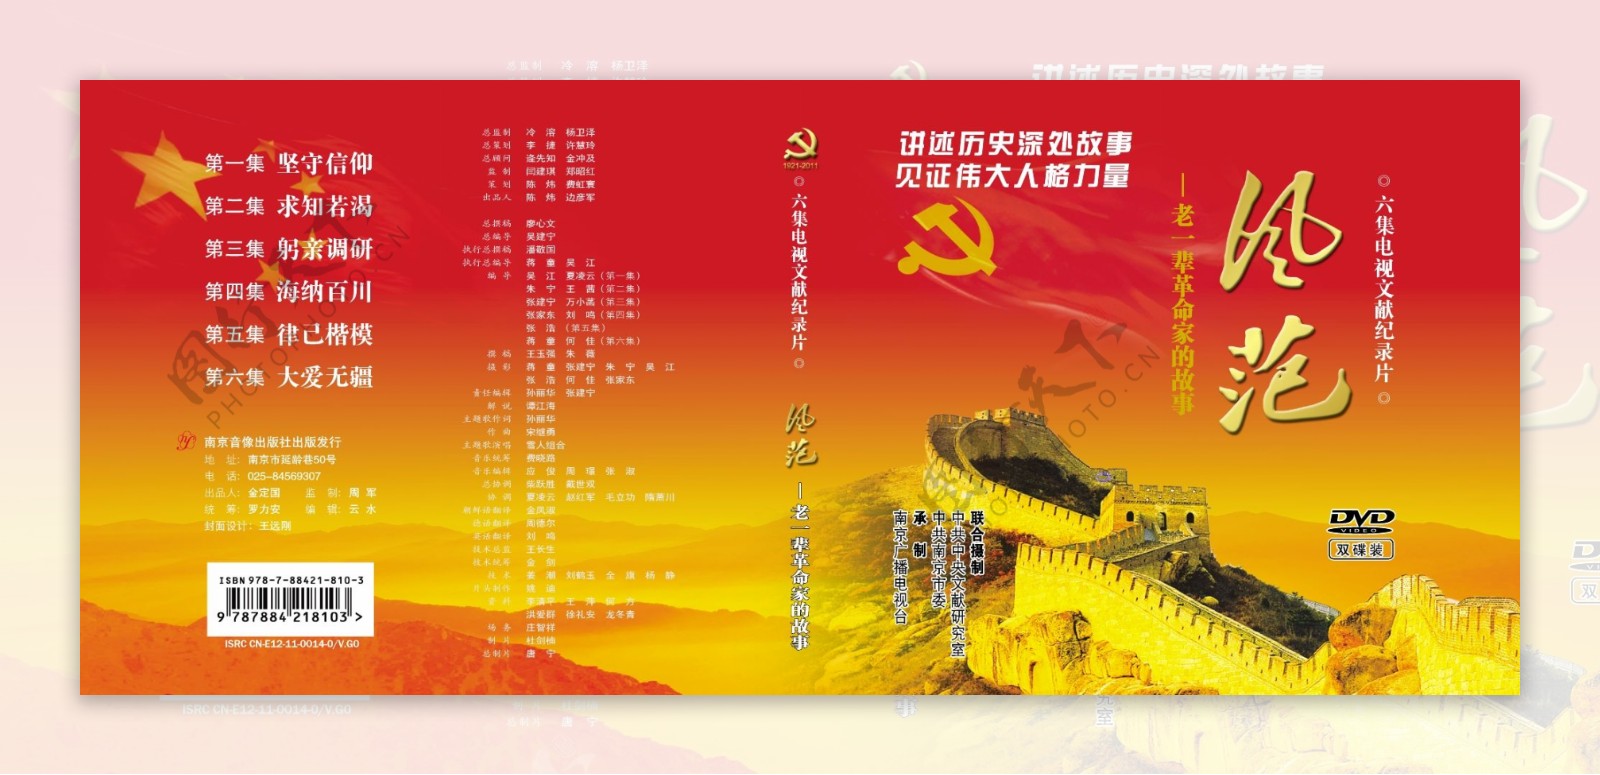 风范老一辈革命家的故事dvd包装封面设计图片